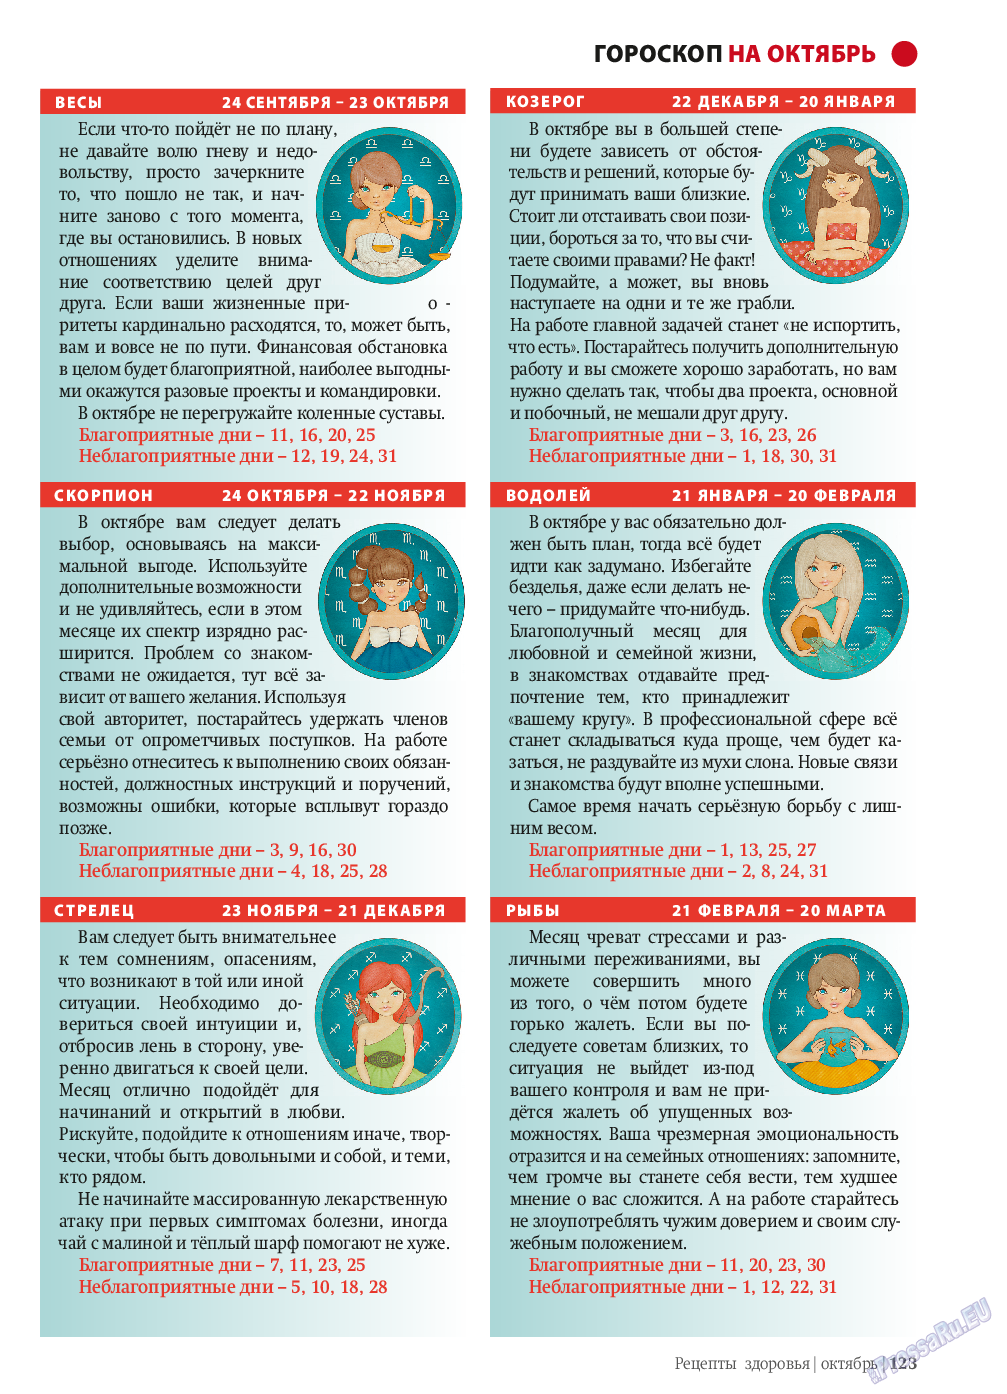 Рецепты здоровья, журнал. 2013 №10 стр.123